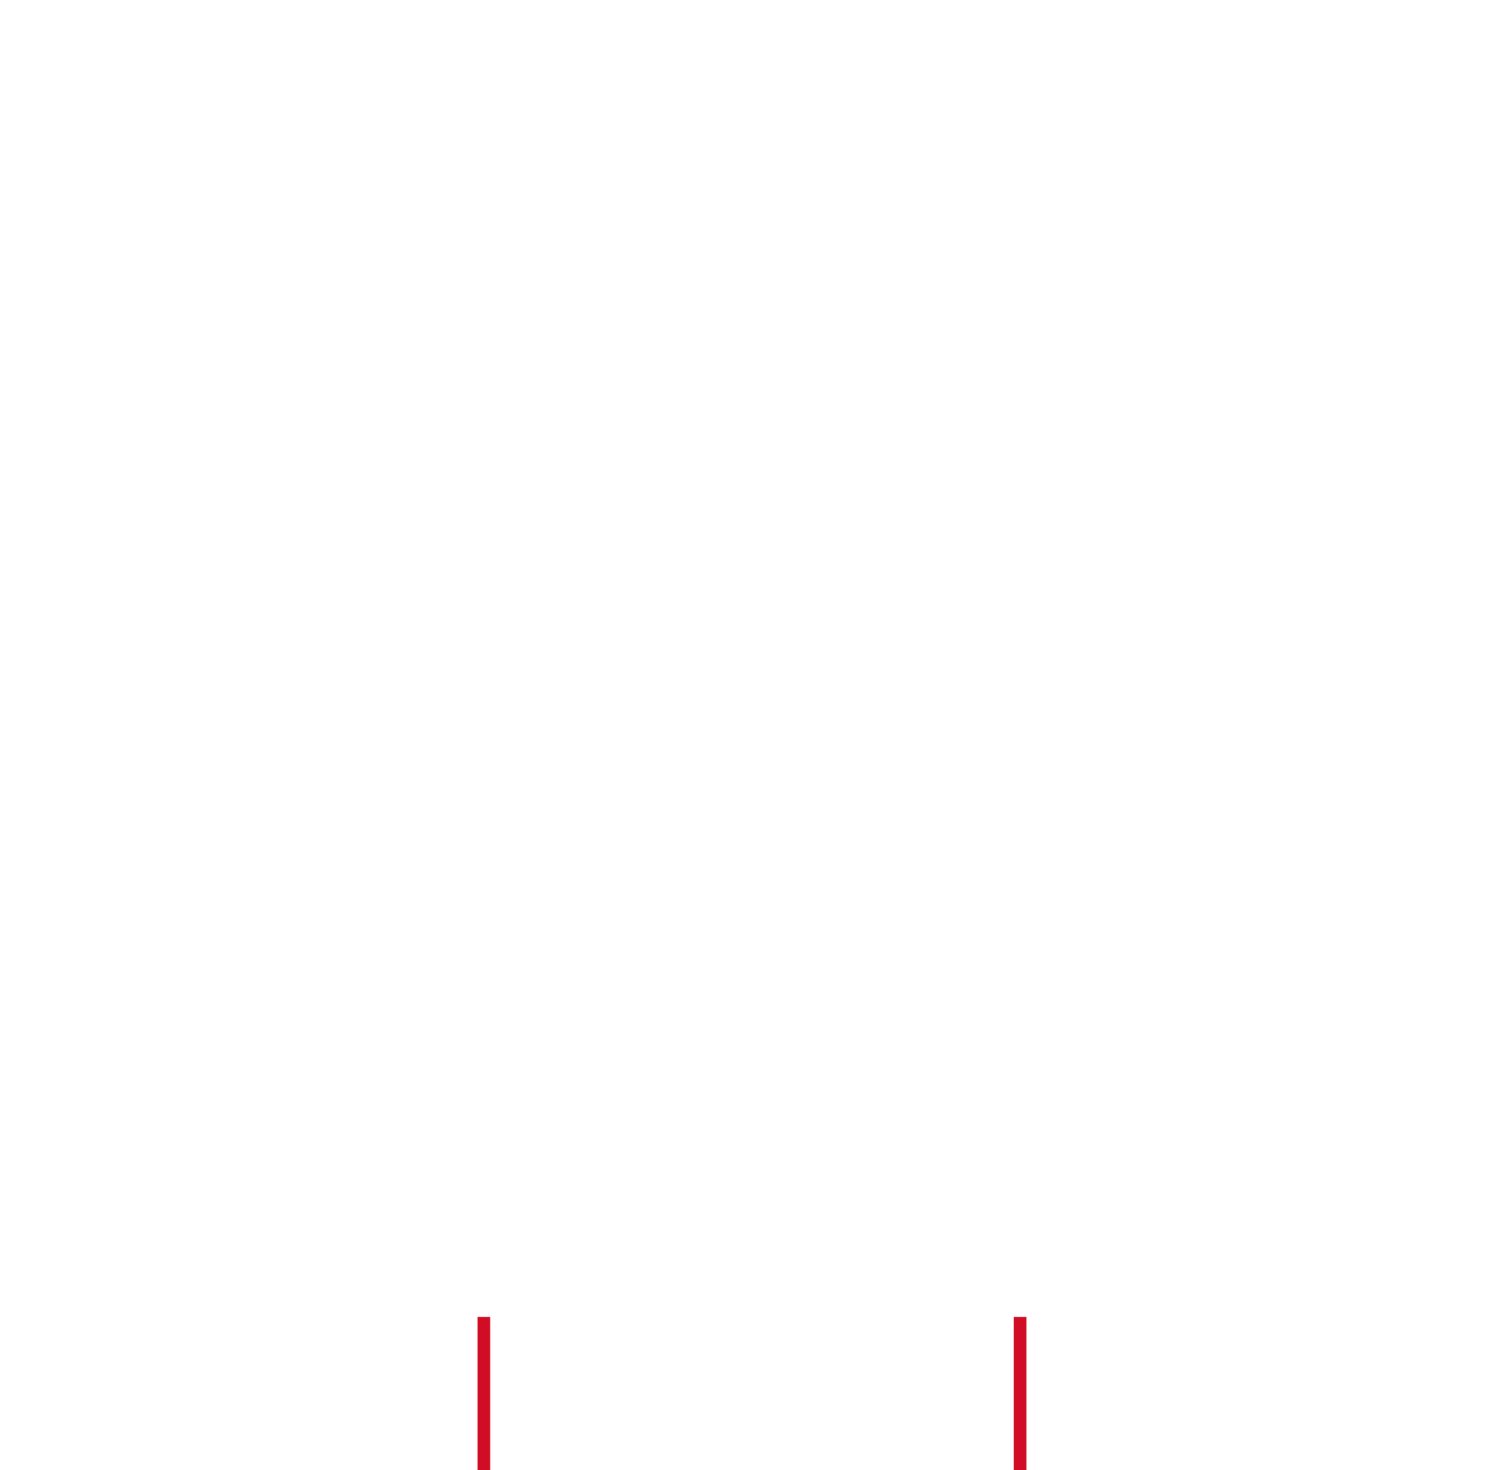 Scott Aaron